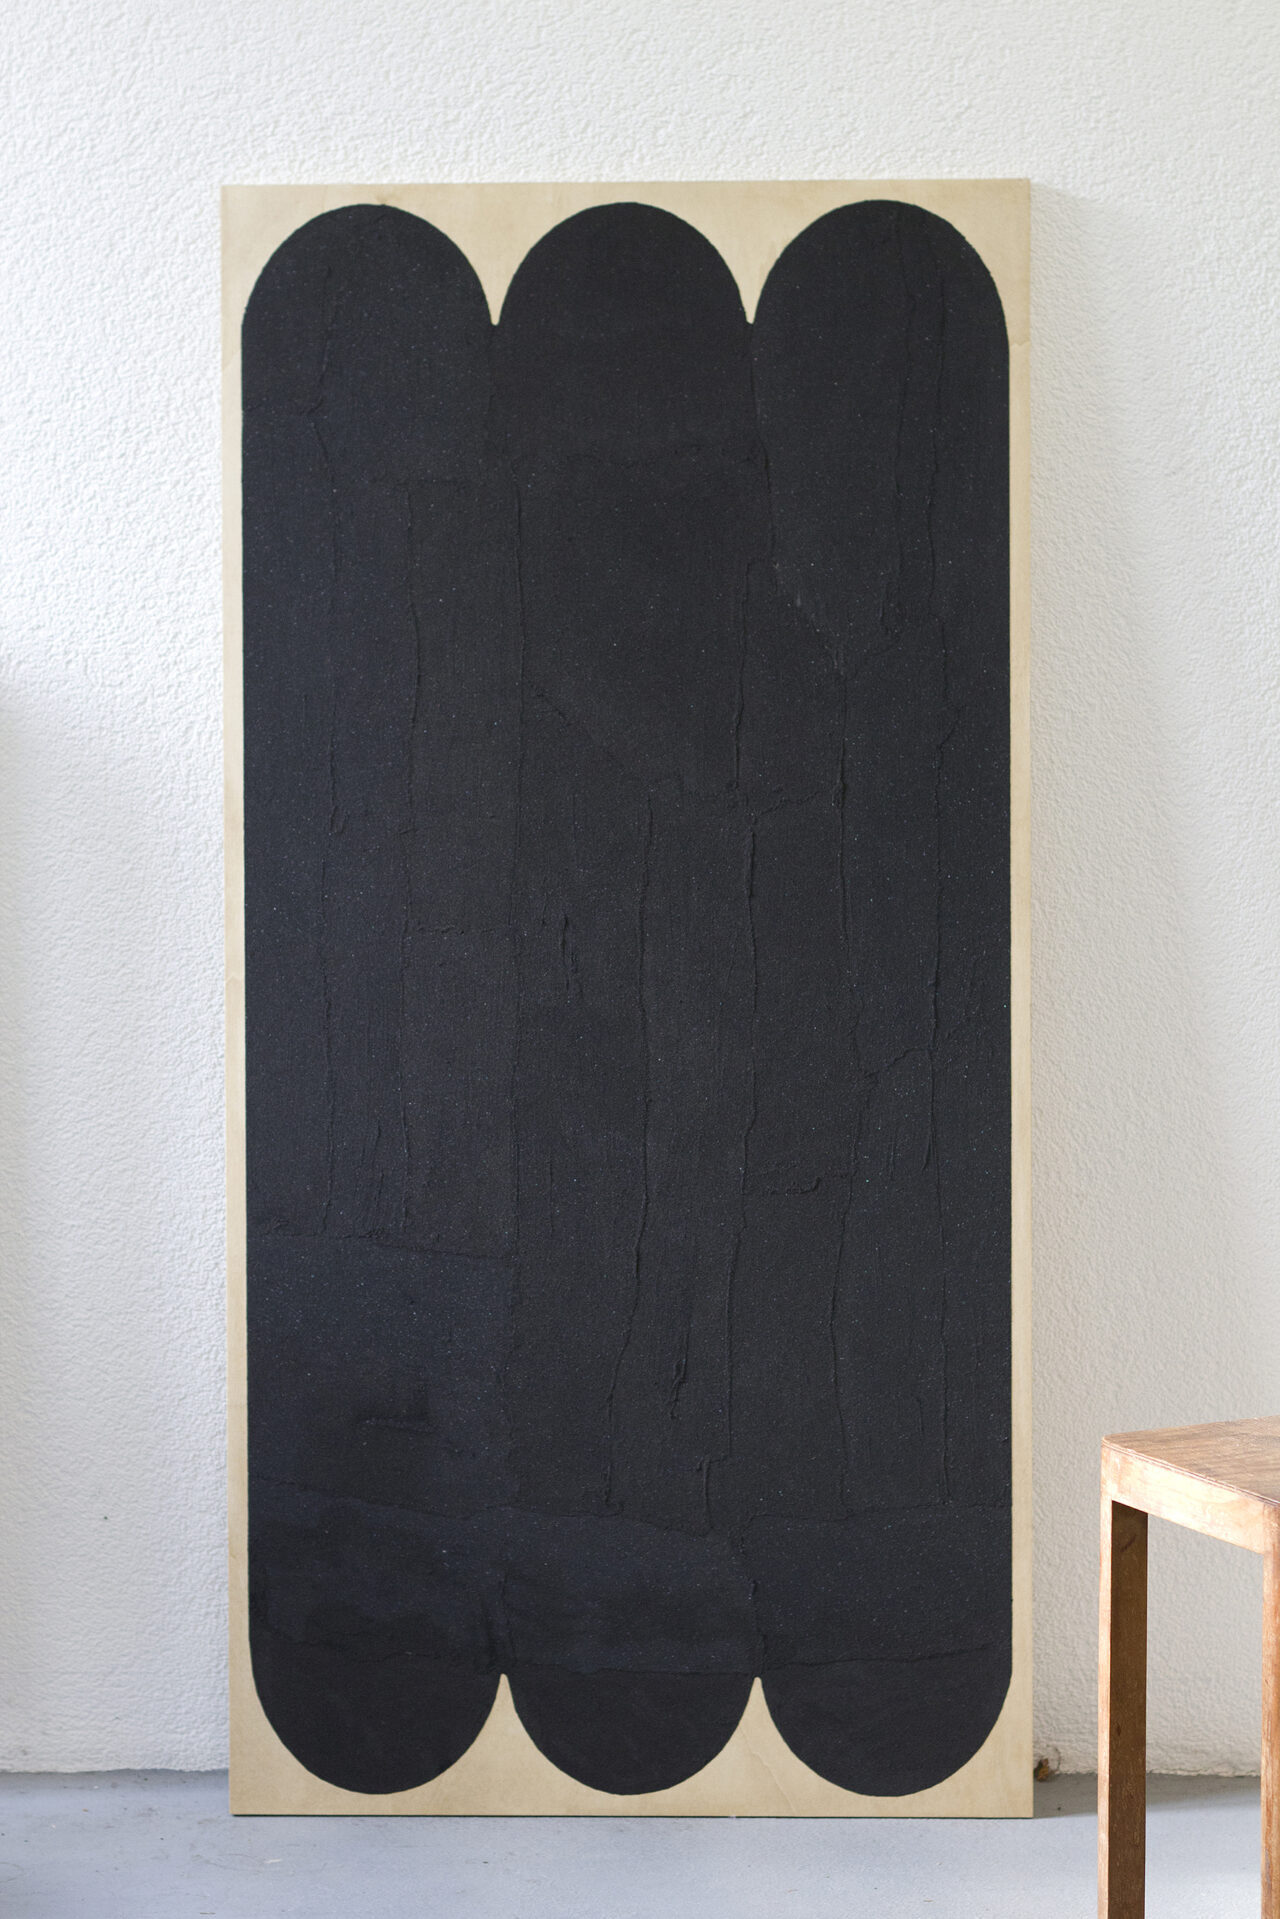 Tableau de grand format sur support bois peinture acrylique et sable noir formant une grande forme inspirée du banc Cassus de Bertille Laguet.